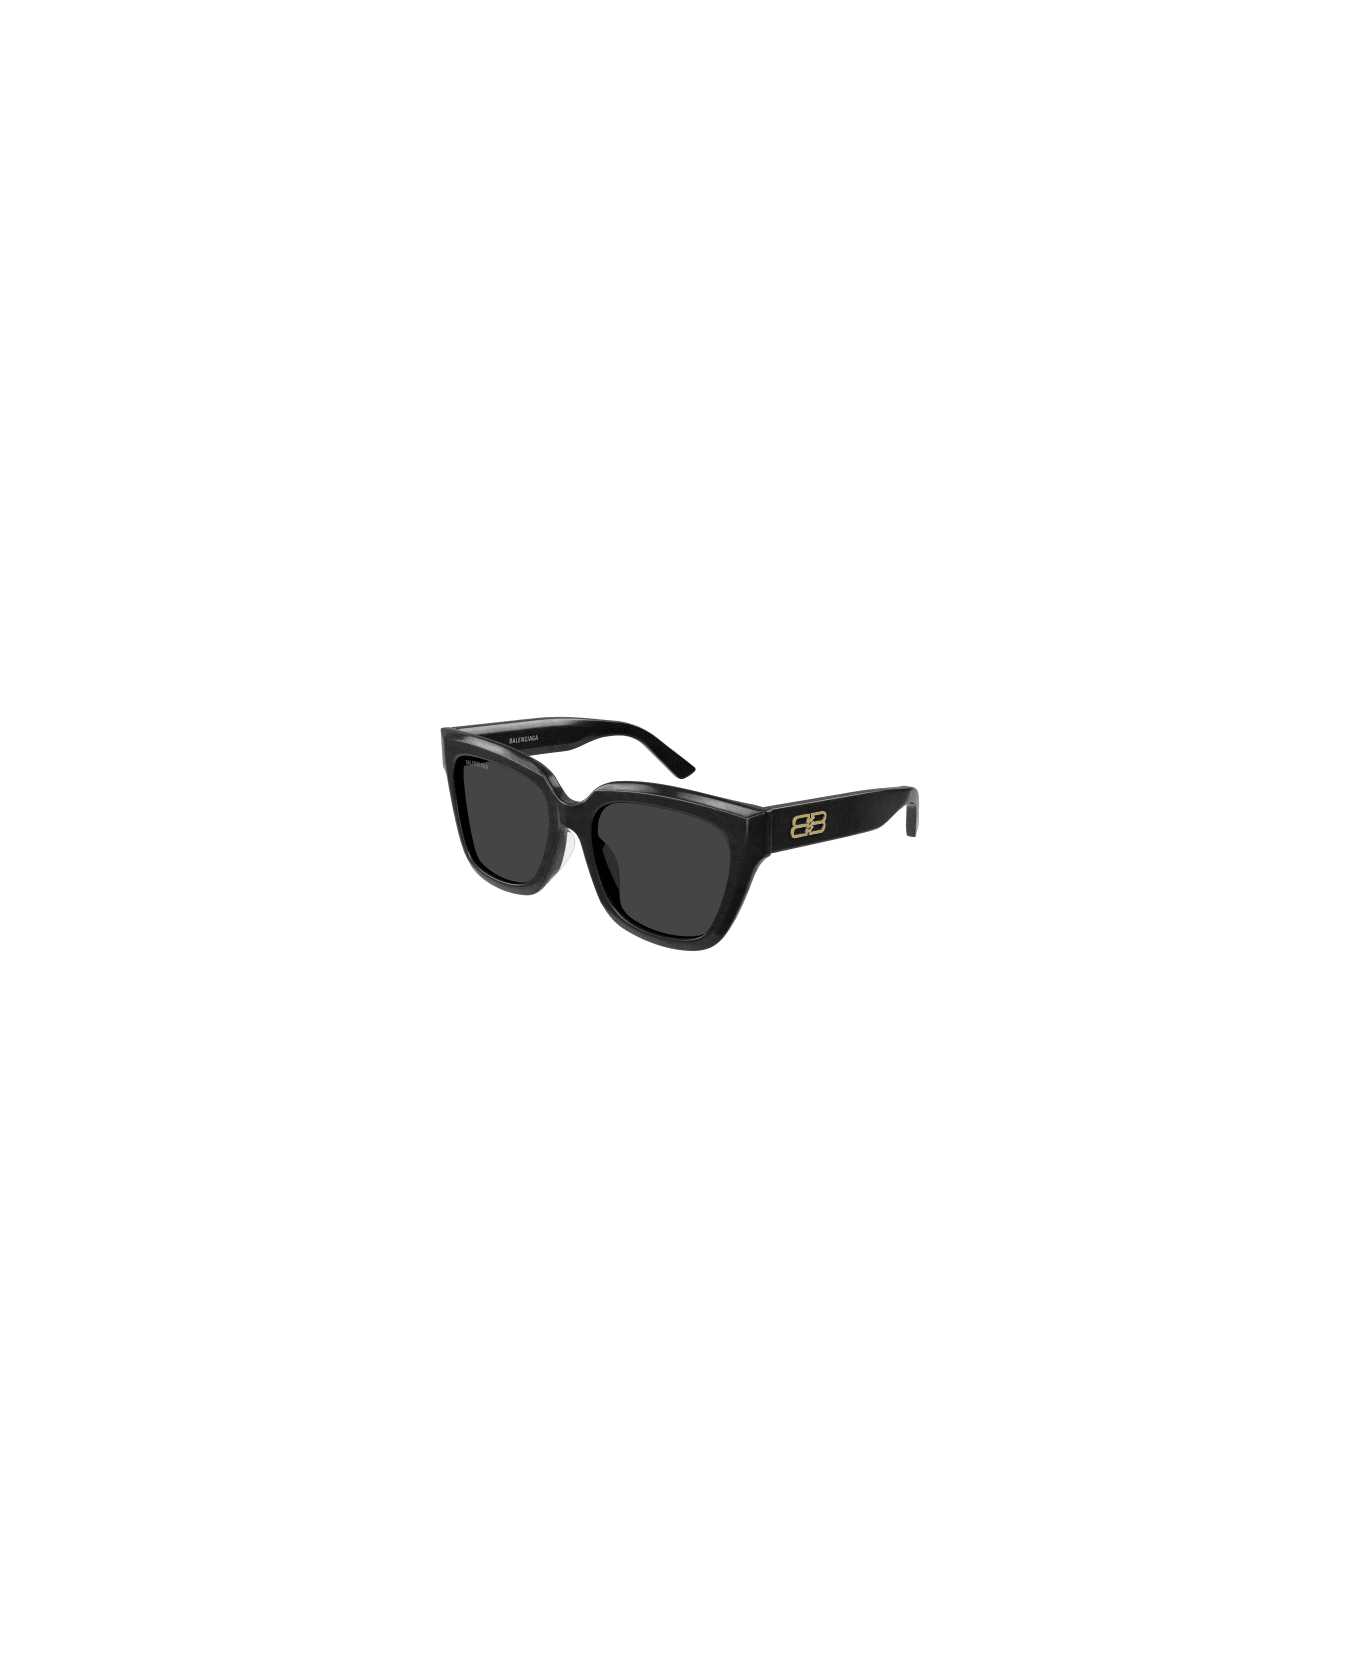 Balenciaga Eyewear 1e654id0a - Gucci Eyewear printed frame sunglasses